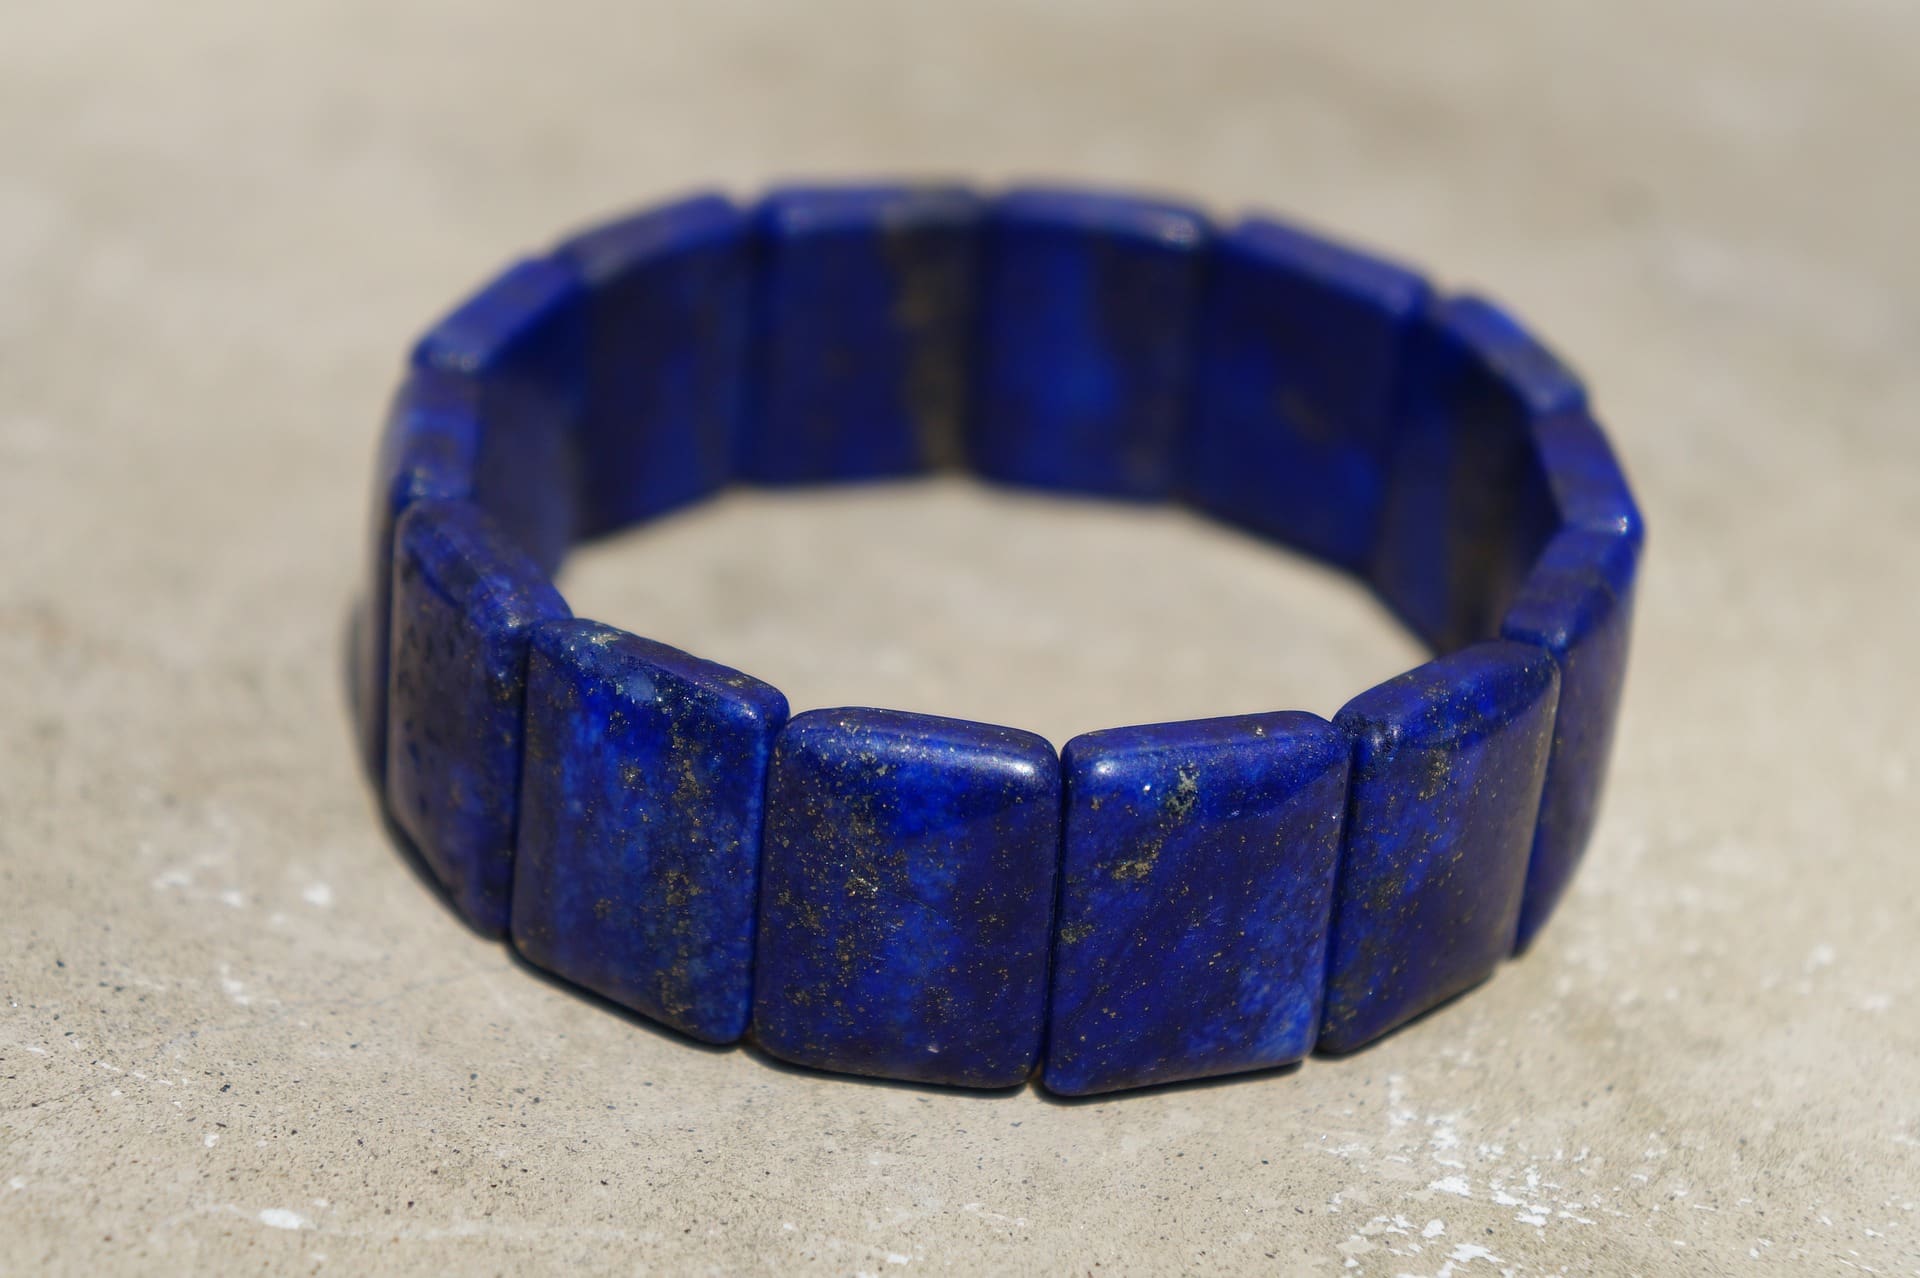 Comment identifier les bijoux en lapis-lazuli naturel